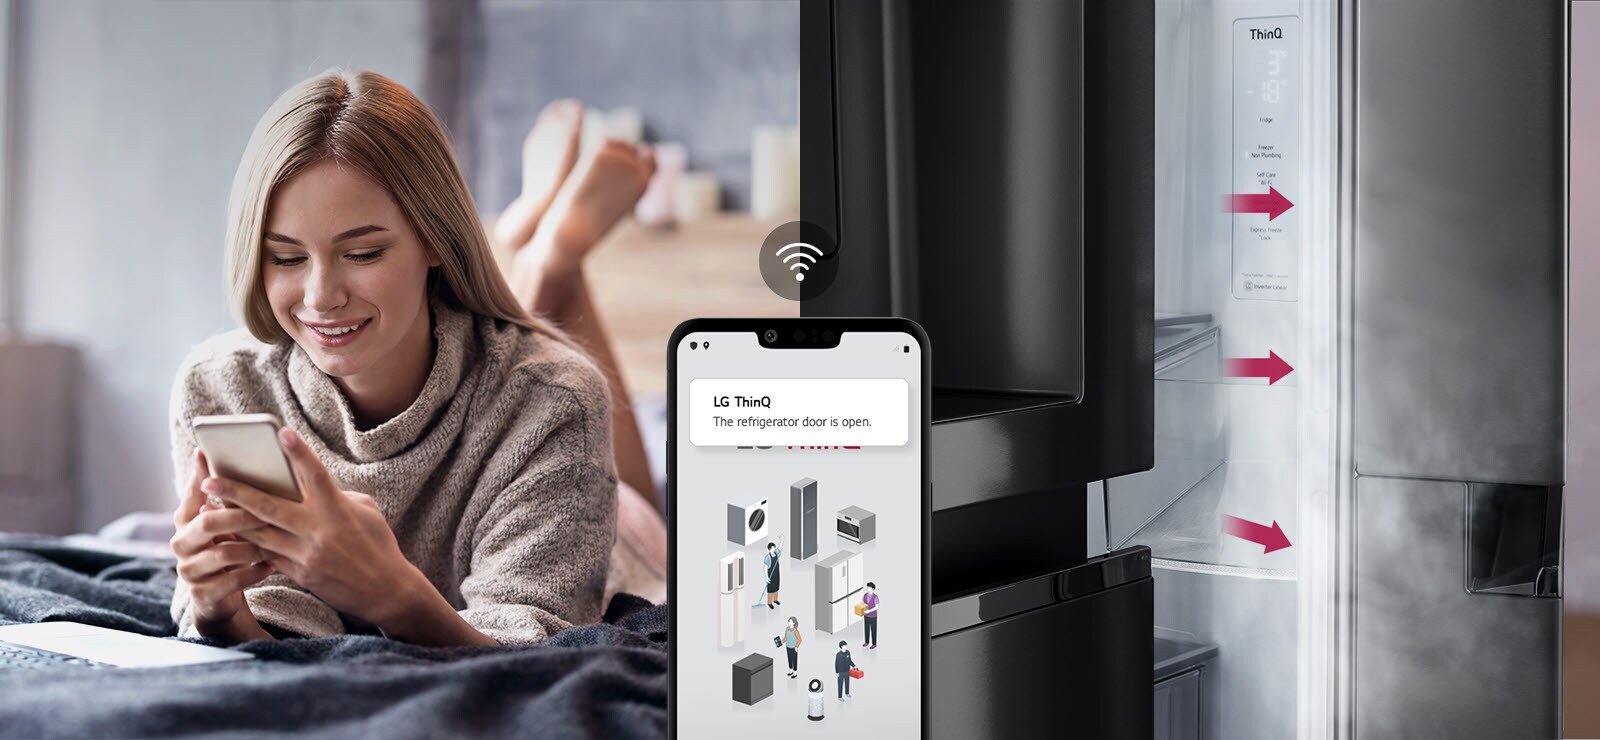 Ühel pildil on voodil lebav ja telefoniekraani vaatav naine. Teisel pildil on külmiku uks, mis on jäetud lahti. Kahe pildi esiplaanil on telefoniekraan, millel on näha rakenduse LG ThinQ teavitused ja telefoni kohal olev Wifi ikoon.